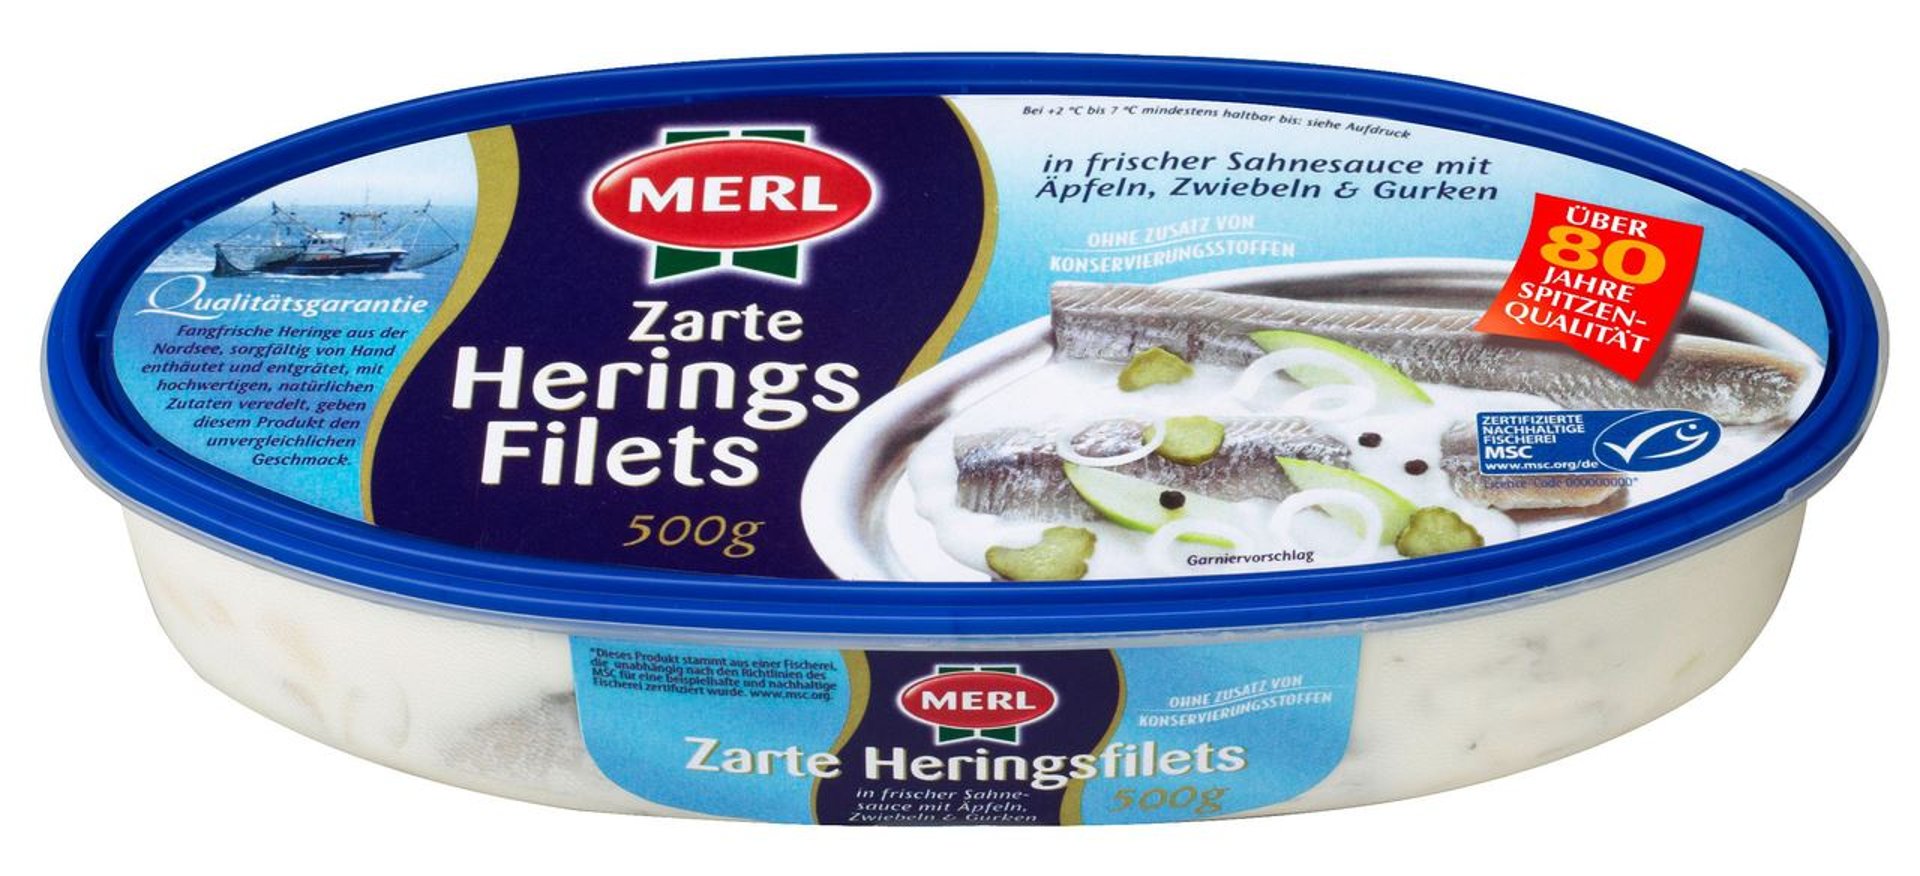 Merl - Zarte Heringsfilets in frischer Sahnesauce mit Äpfeln, Zwiebeln & Gurken 500 g